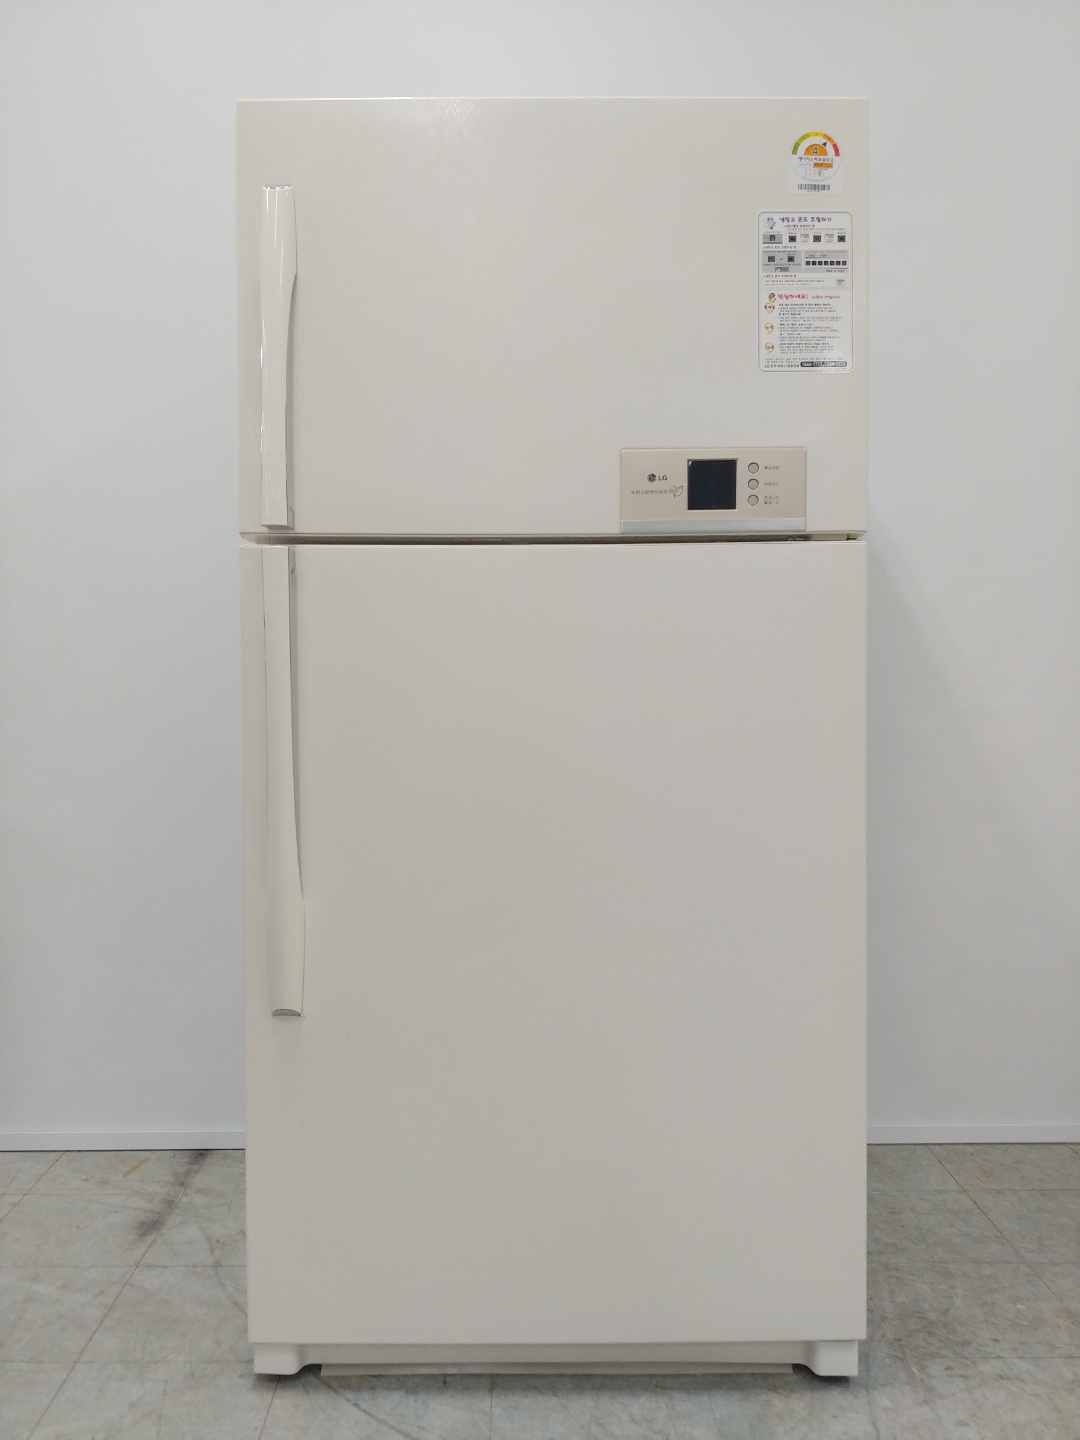 중고일반형냉장고 LG전자 538리터 2008년 하남 011006